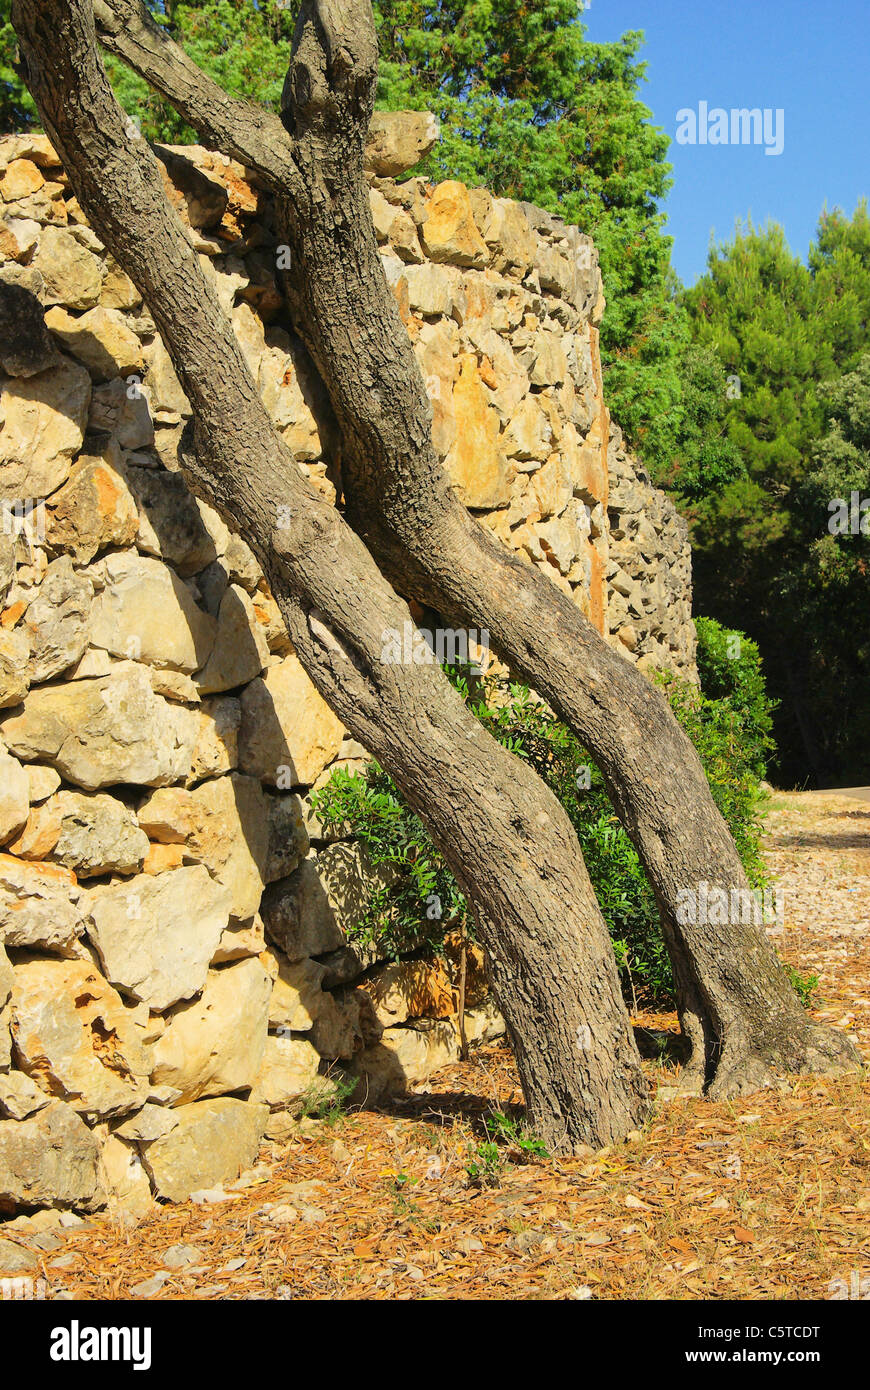 Un Olivenbaum Mauer - Olive tree sulla parete 01 Foto Stock